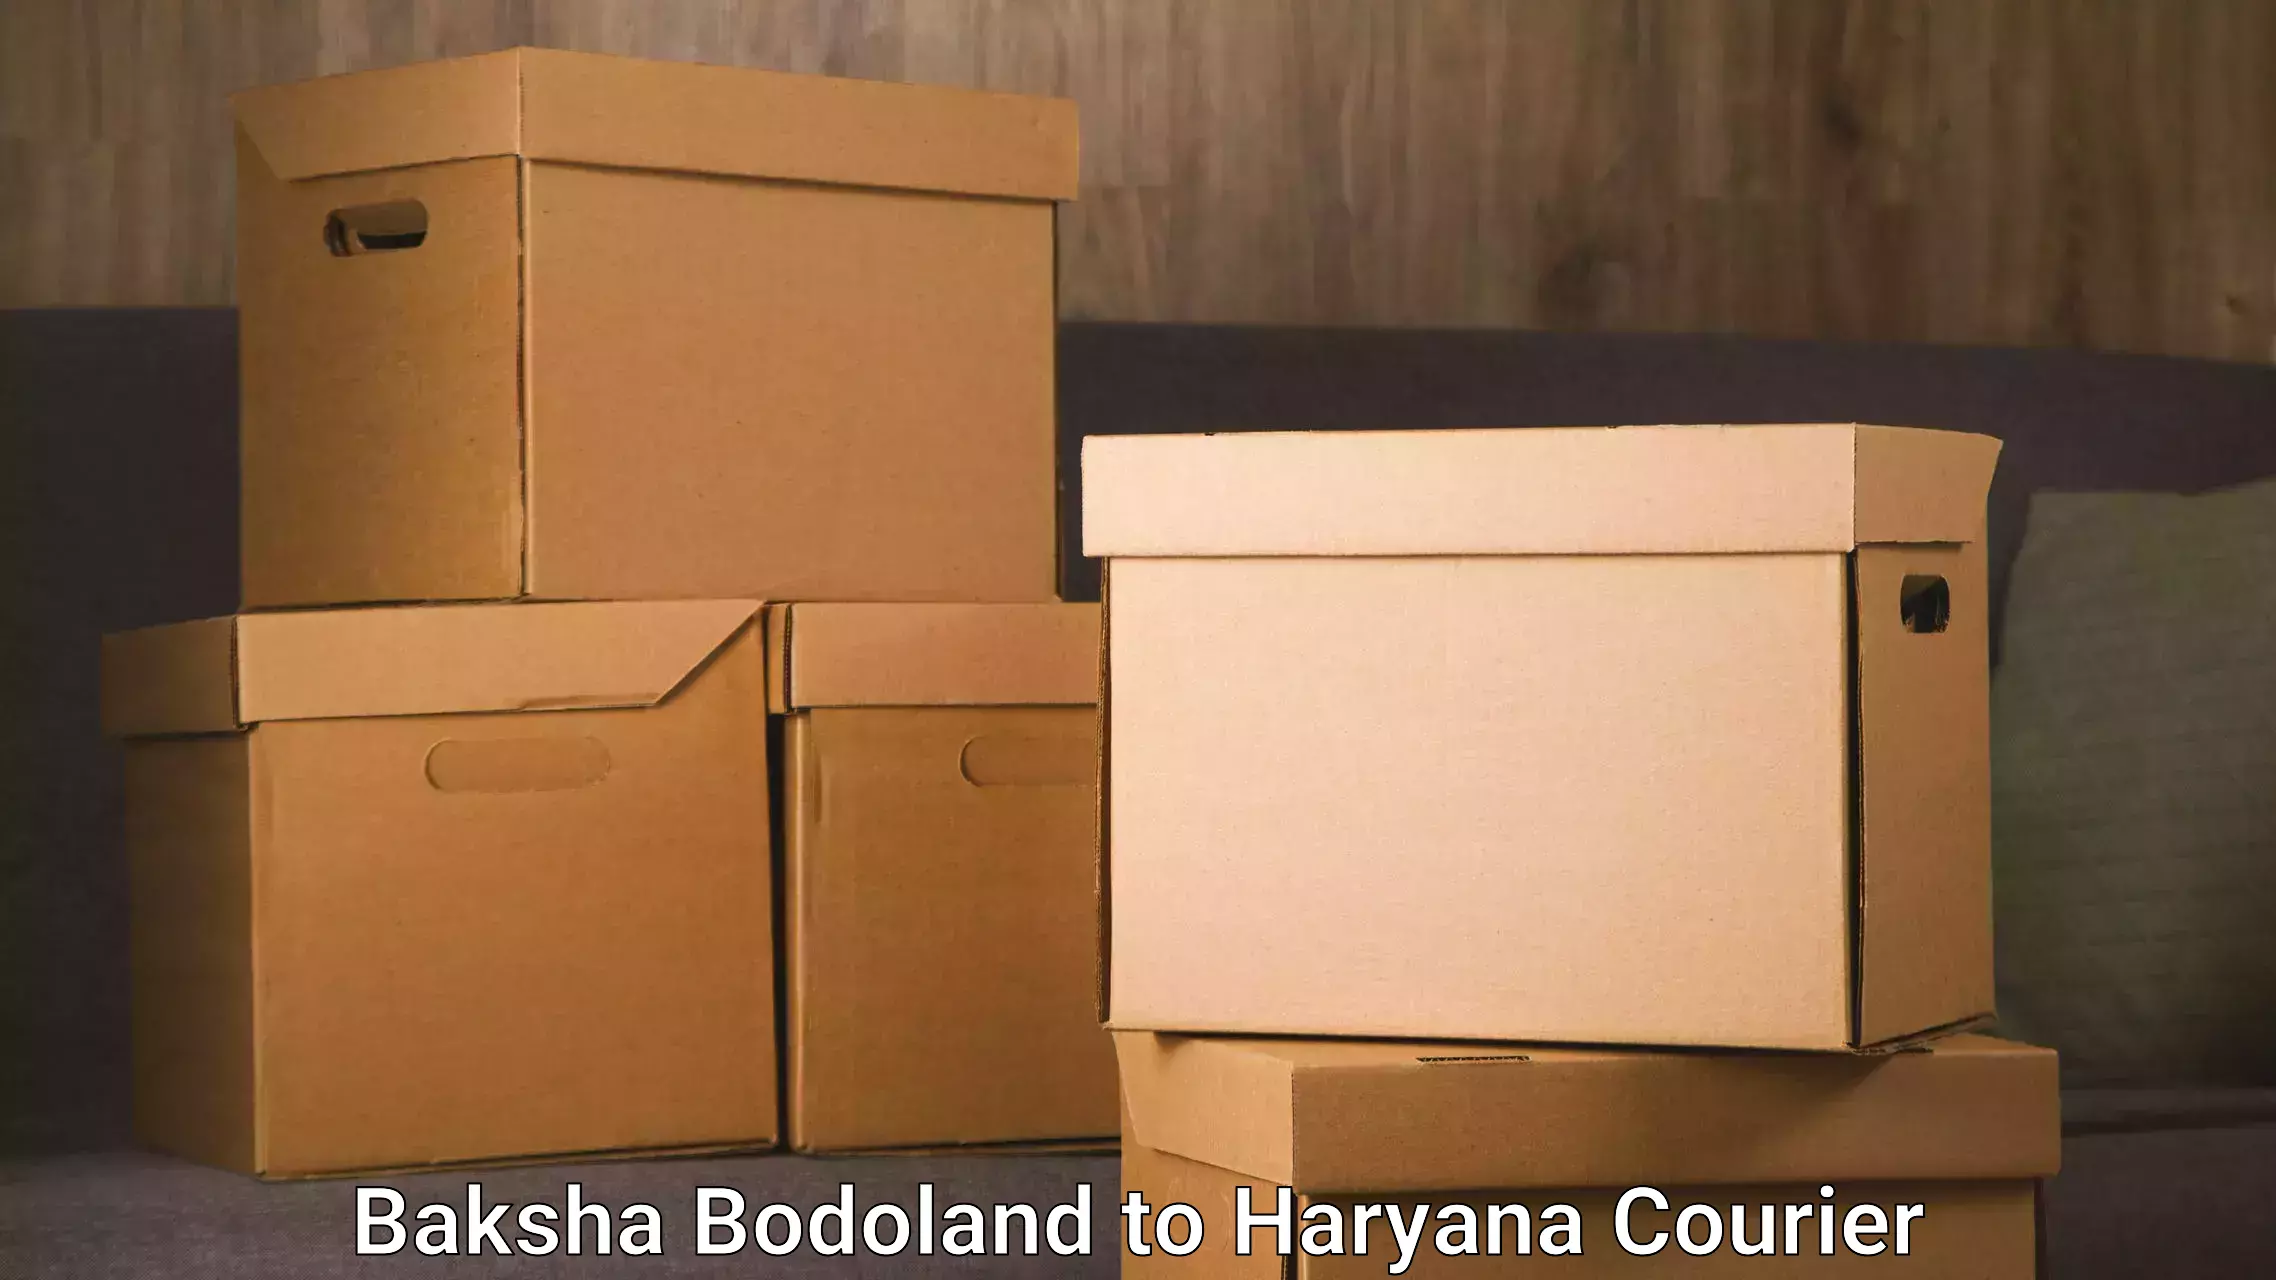 24-hour courier service Baksha Bodoland to Guhla